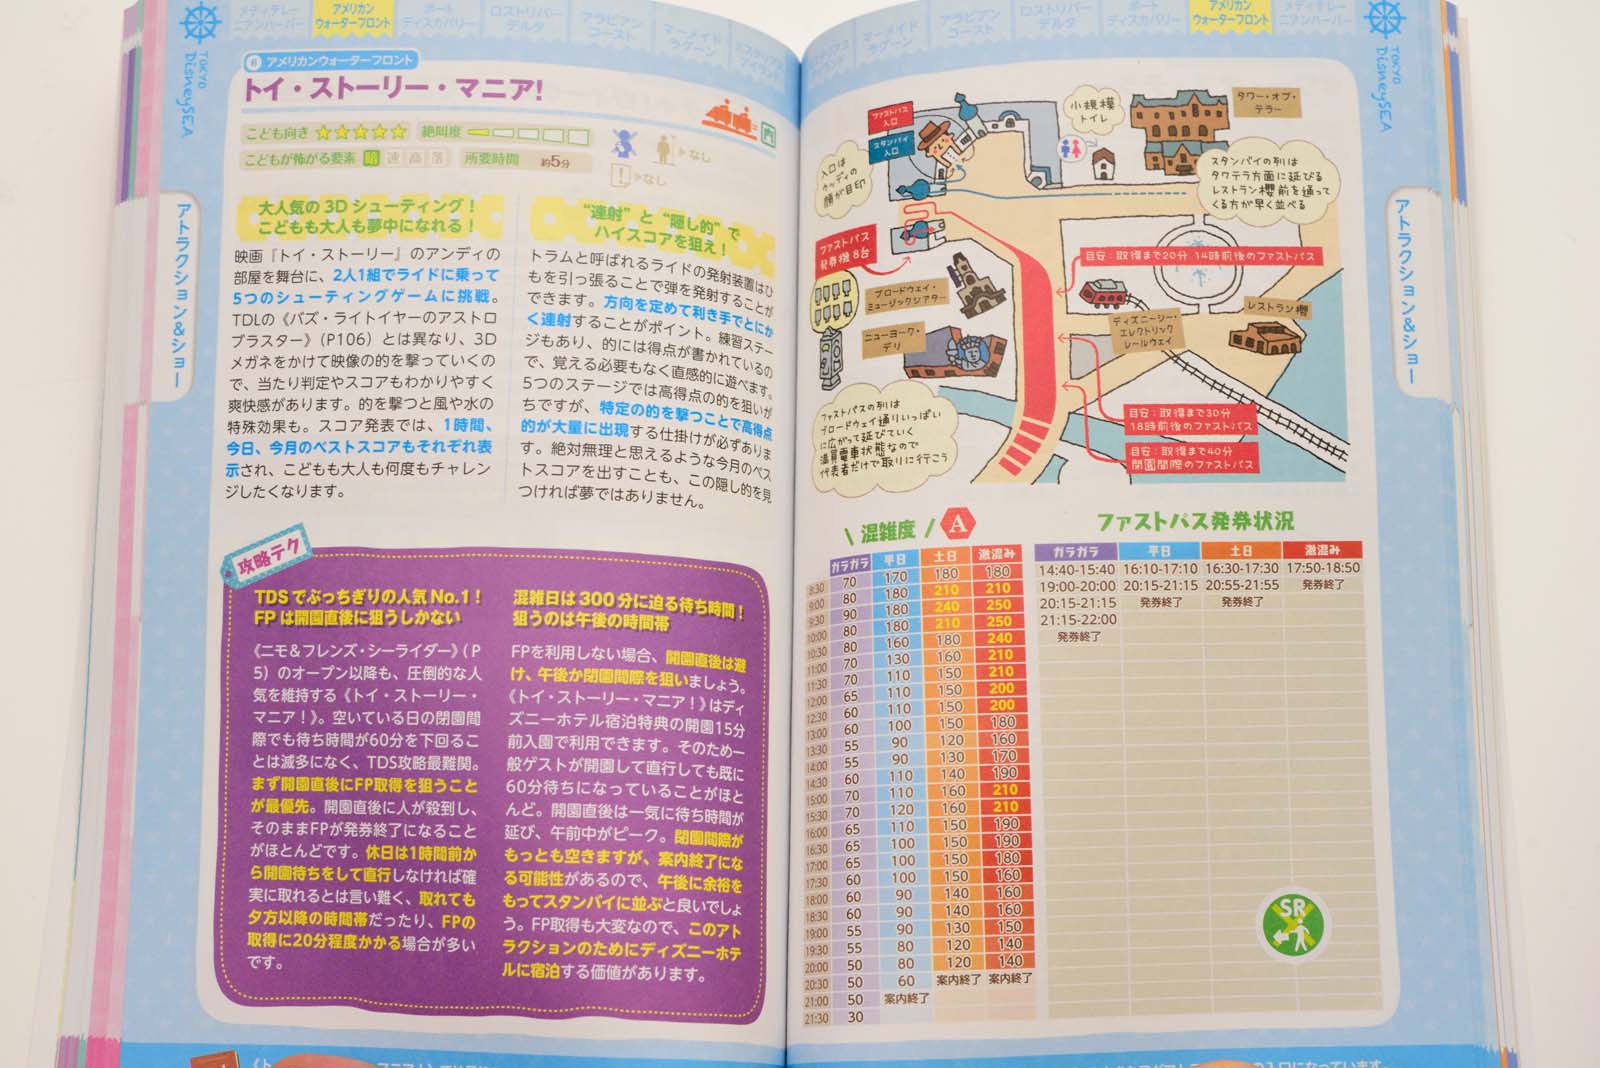 執筆ガイド本の最新版 東京ディズニーランド シー裏技ガイド 18 が10月28日に発売 Disney Colors Blog